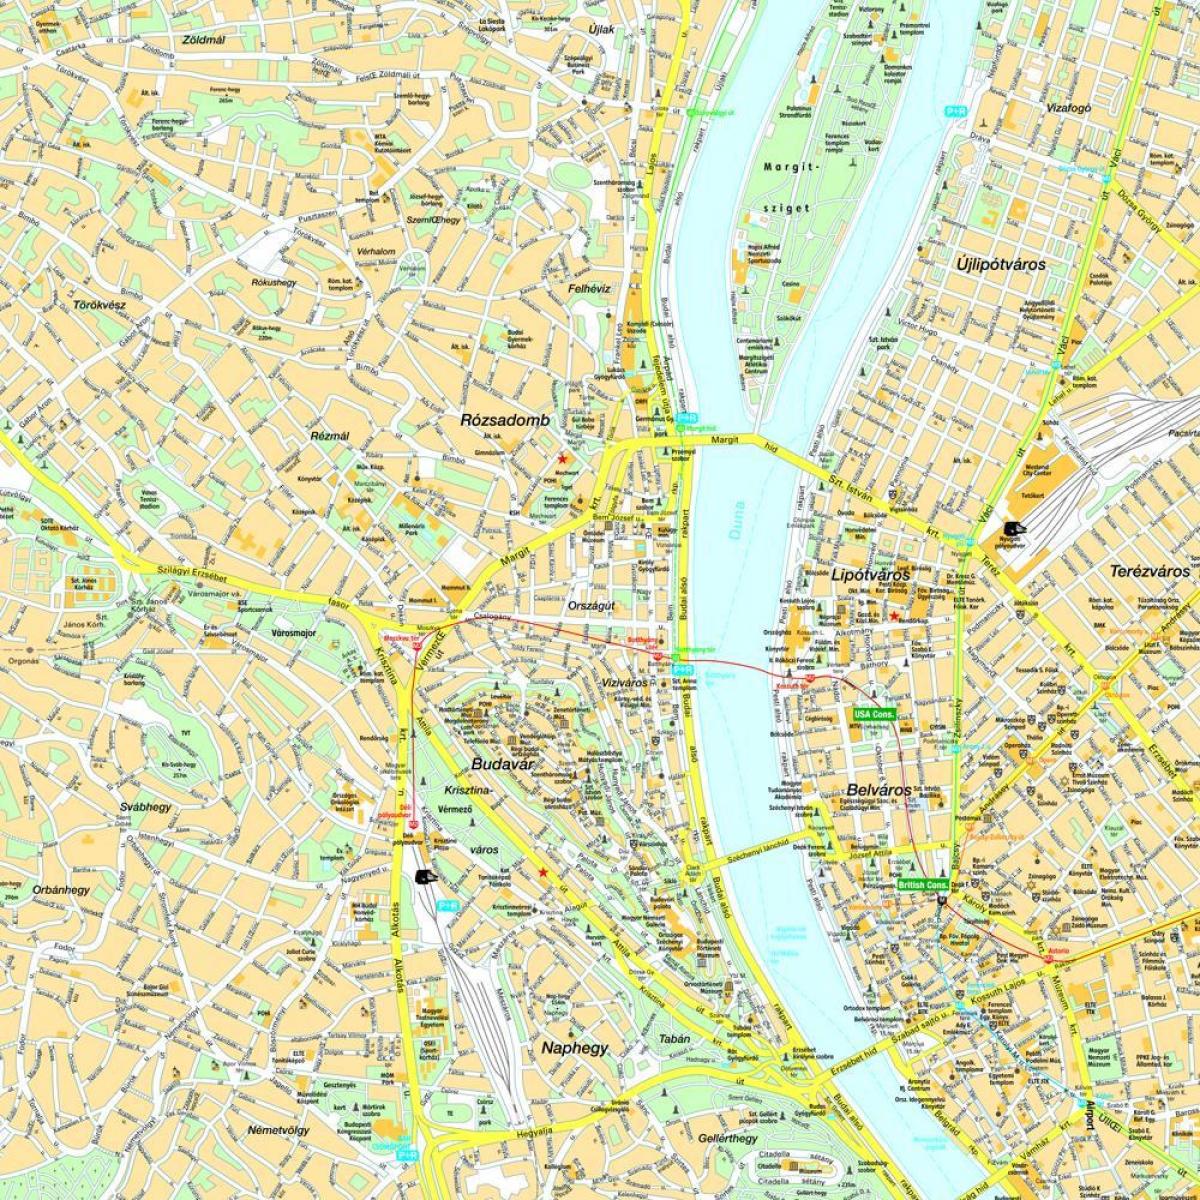 نقشہ بوڈاپیسٹ کے اور ارد گرد کے علاقے